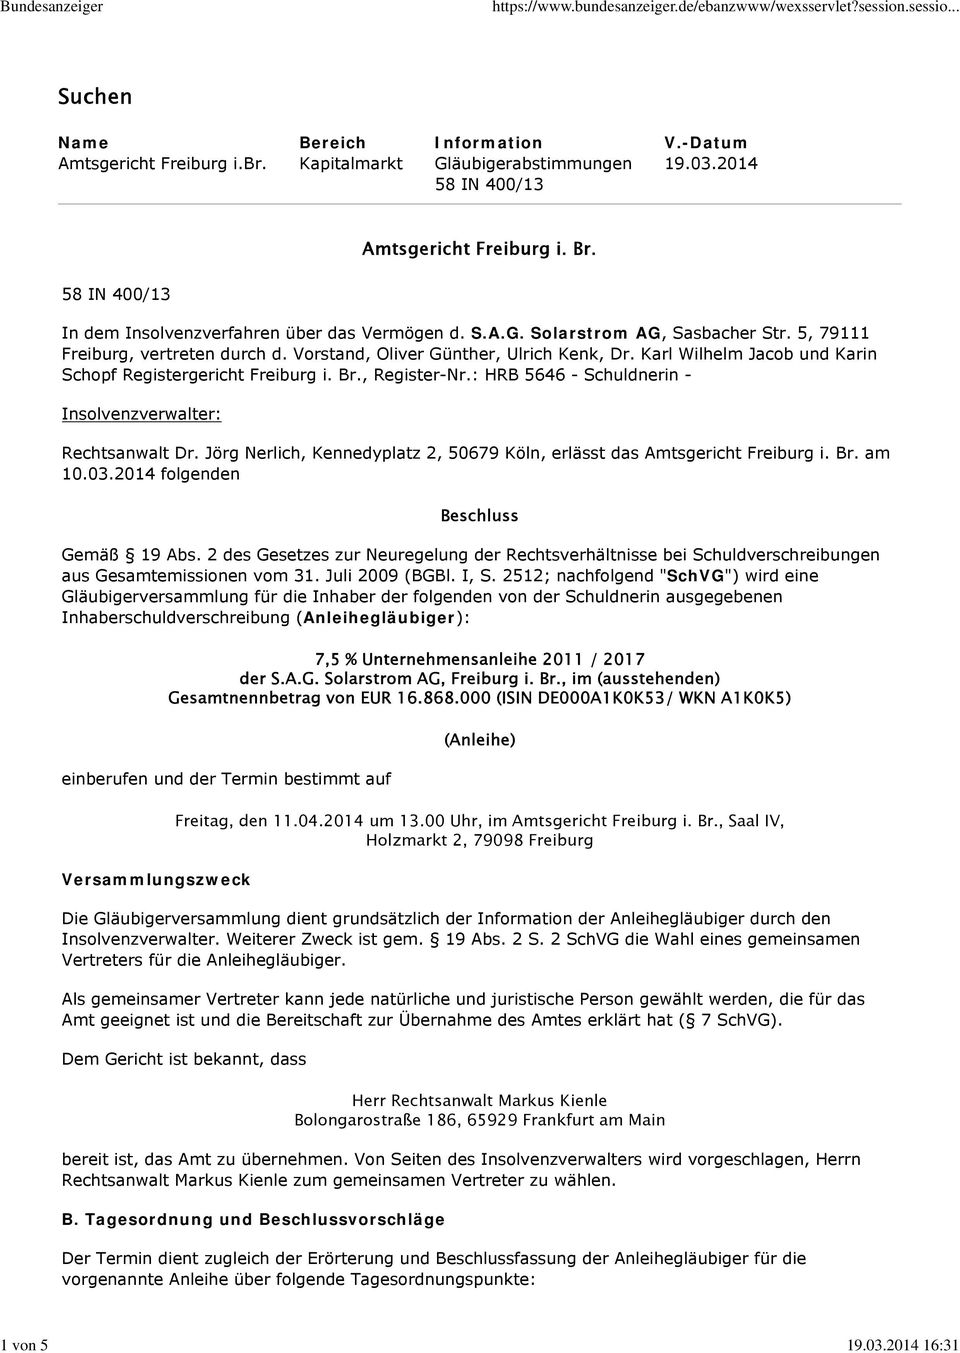 Karl Wilhelm Jacob und Karin Schopf Registergericht Freiburg i. Br., Register-Nr.: HRB 5646 - Schuldnerin - Insolvenzverwalter: Rechtsanwalt Dr.